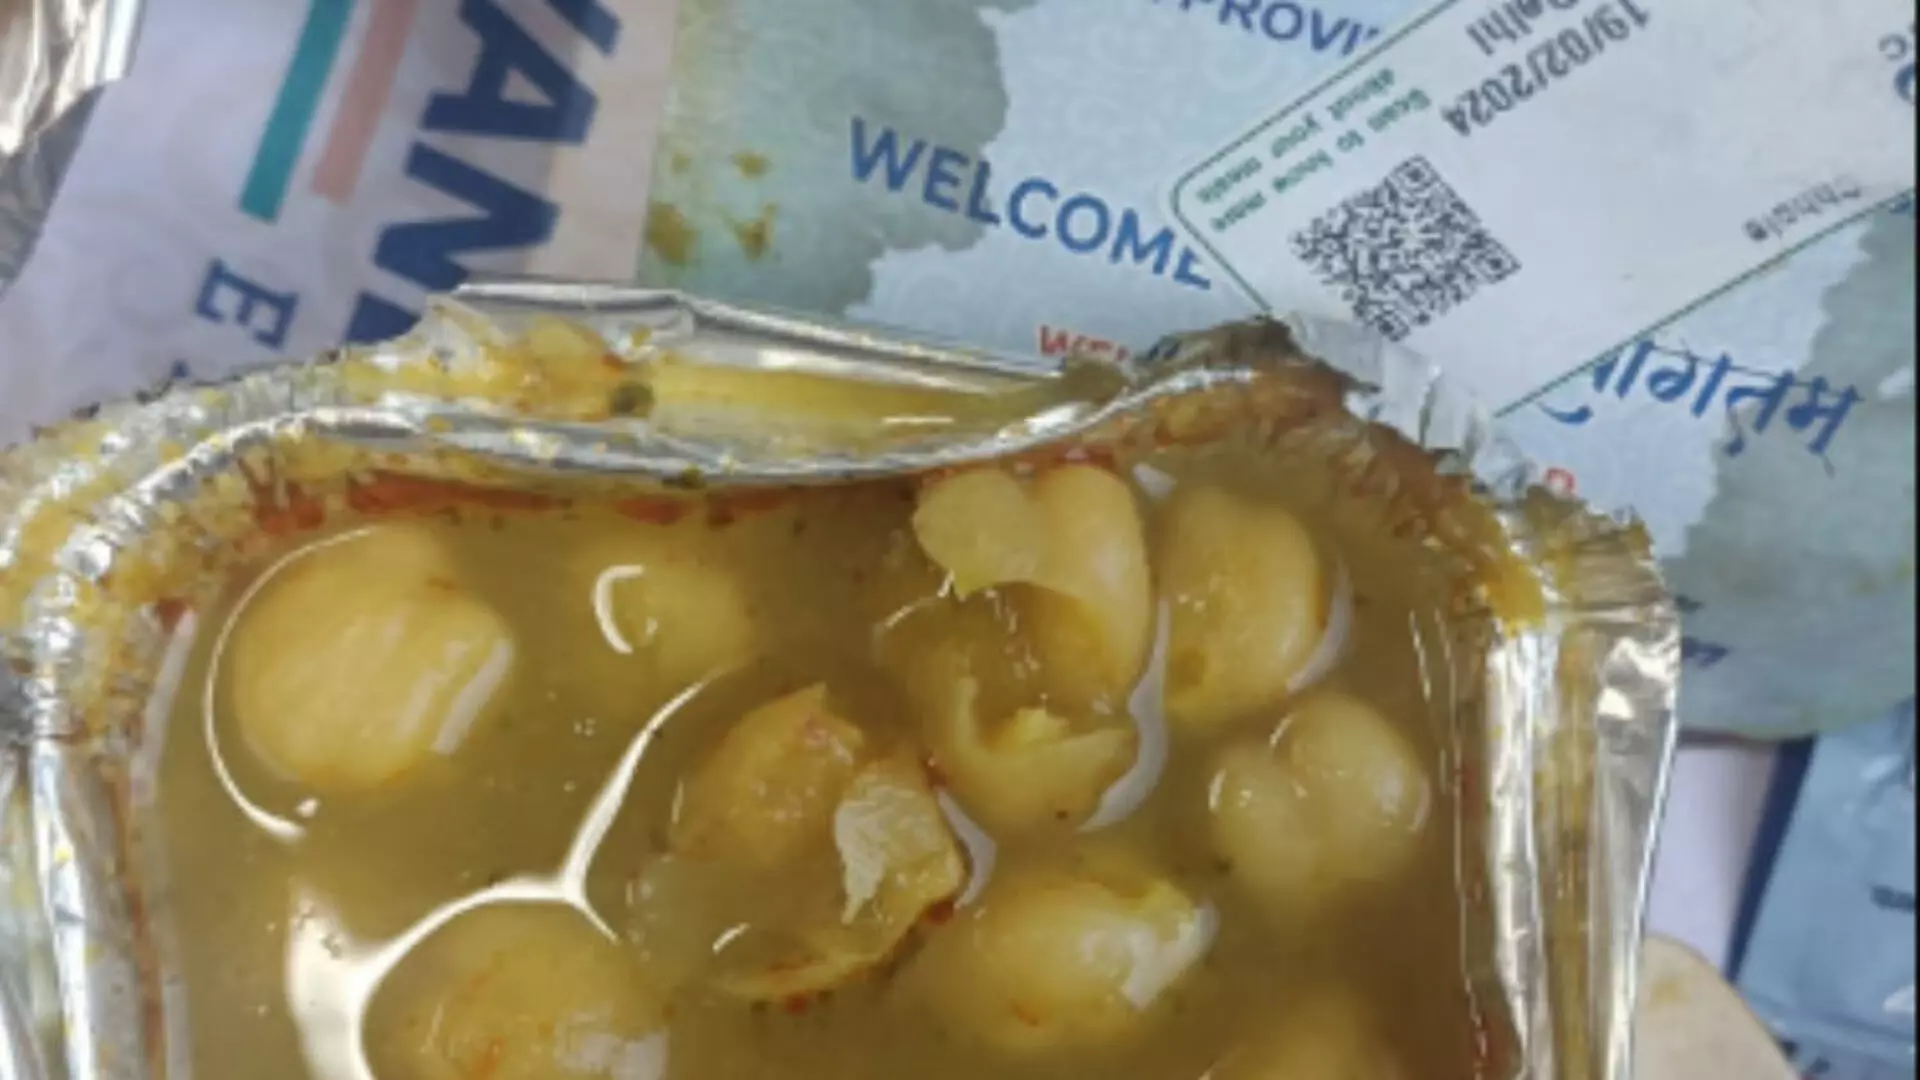 वंदे भारत सेवा के खराब भोजन पर फिर बवाल, यात्री ने शेयर की पोस्ट